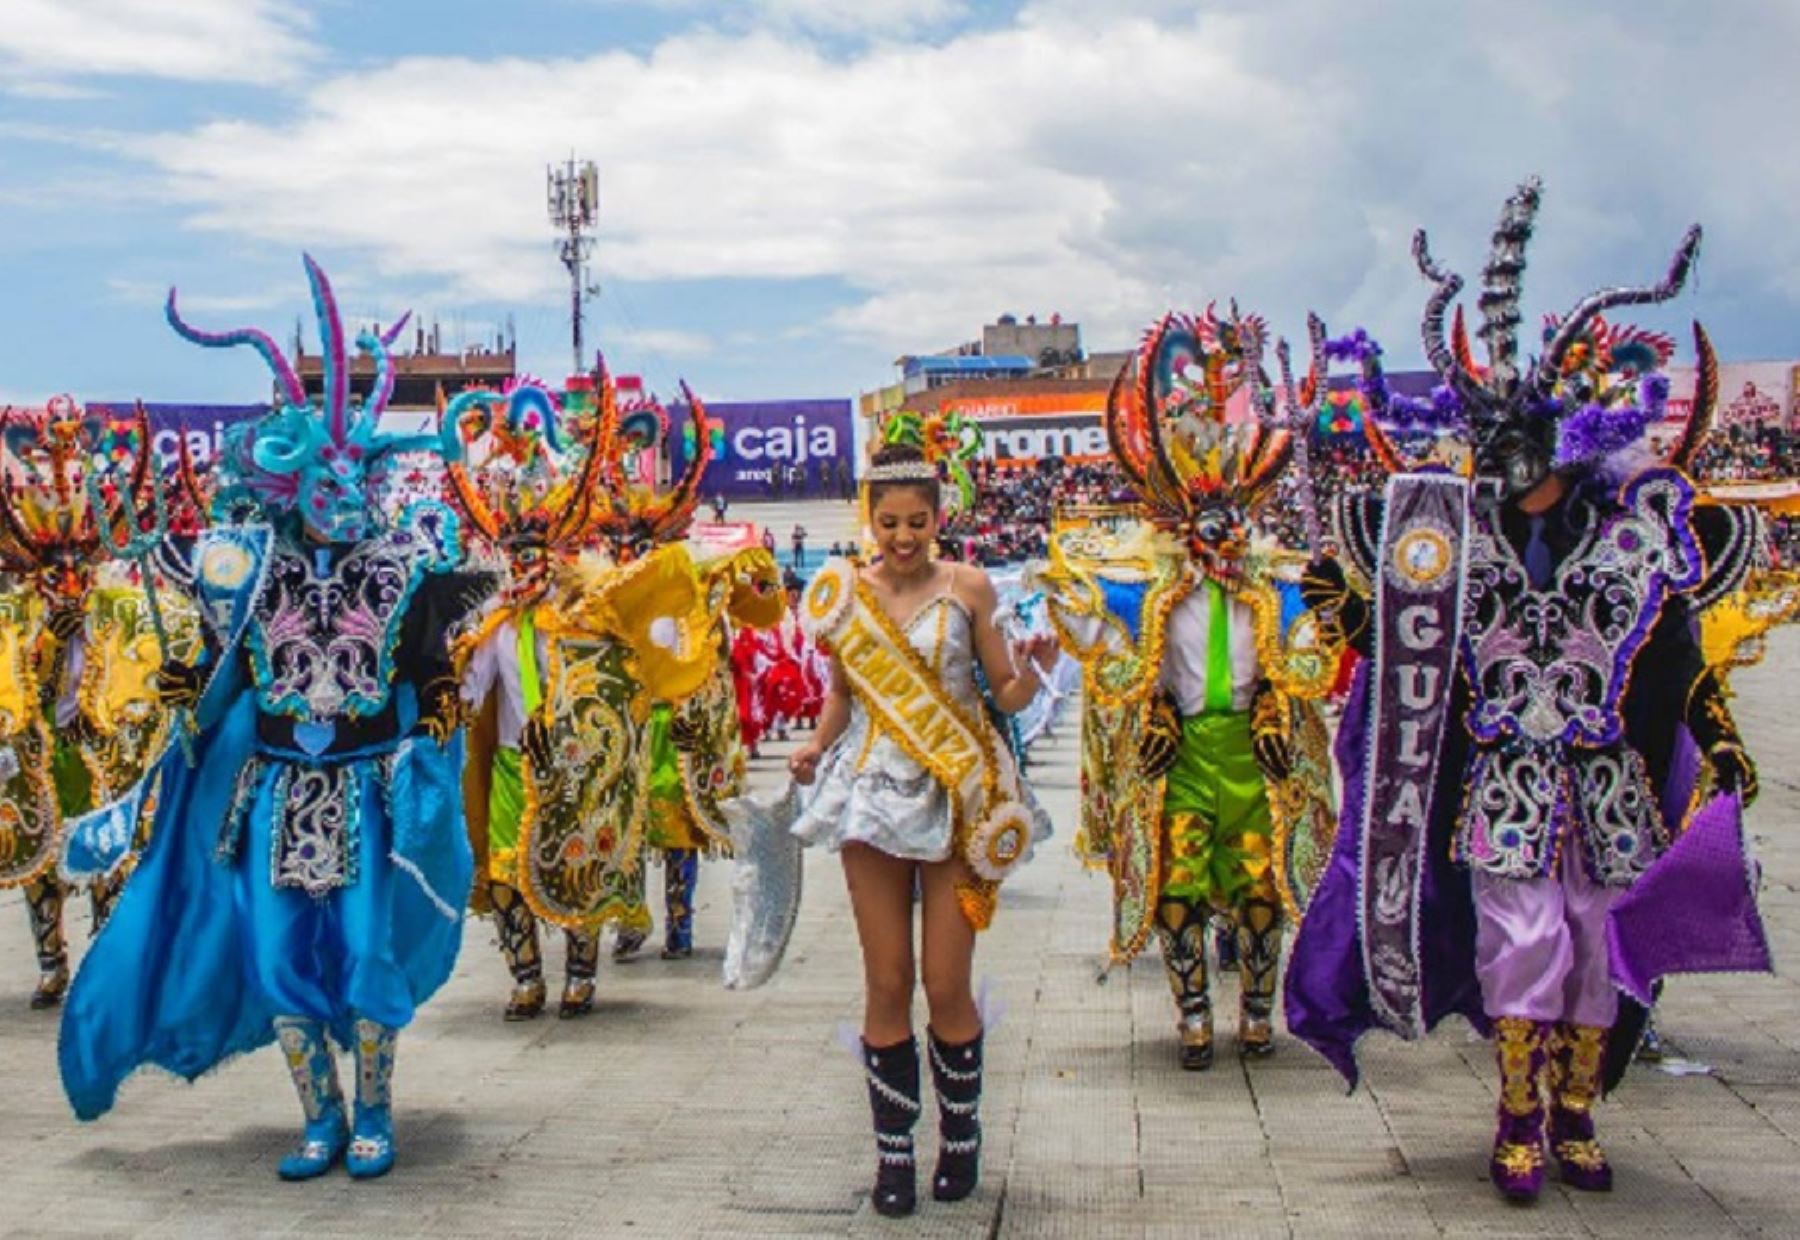 El domingo 11 de febrero tendrá lugar una de las actividades más emblemáticas de la Festividad en honor de la Virgen de la Candelaria en Puno: el concurso de trajes de luces.